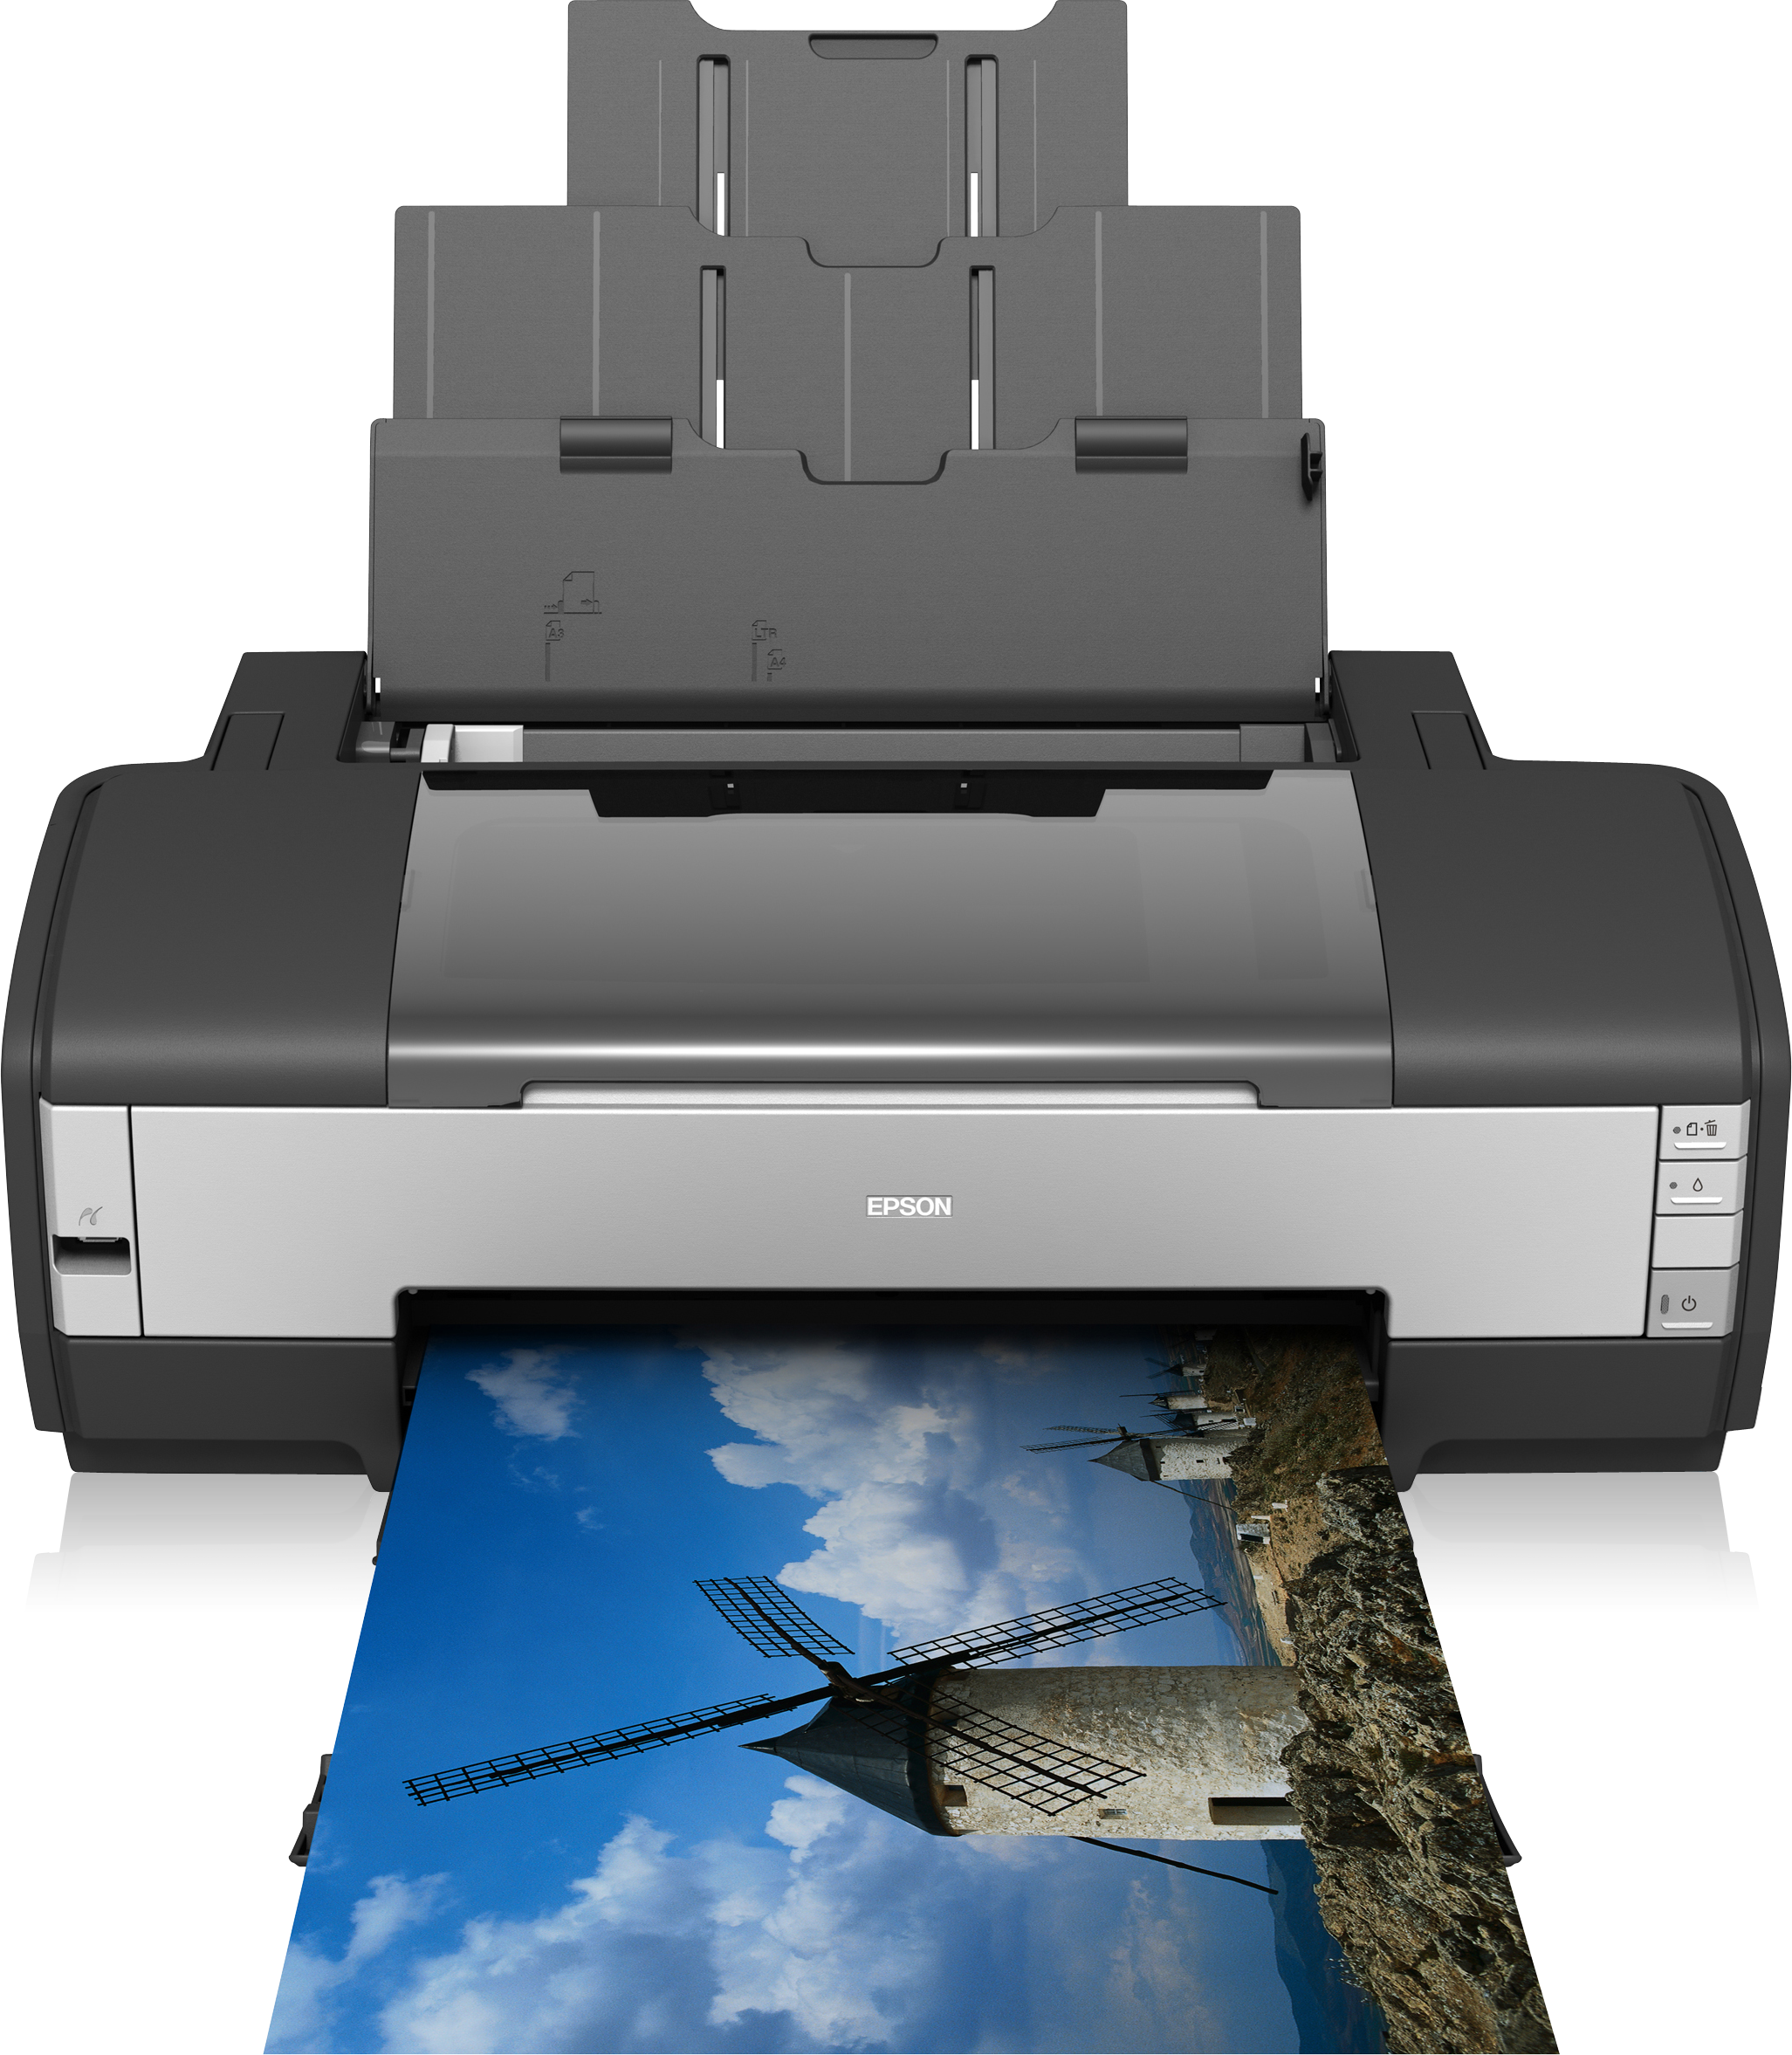 Виды бумаги для струйного принтера